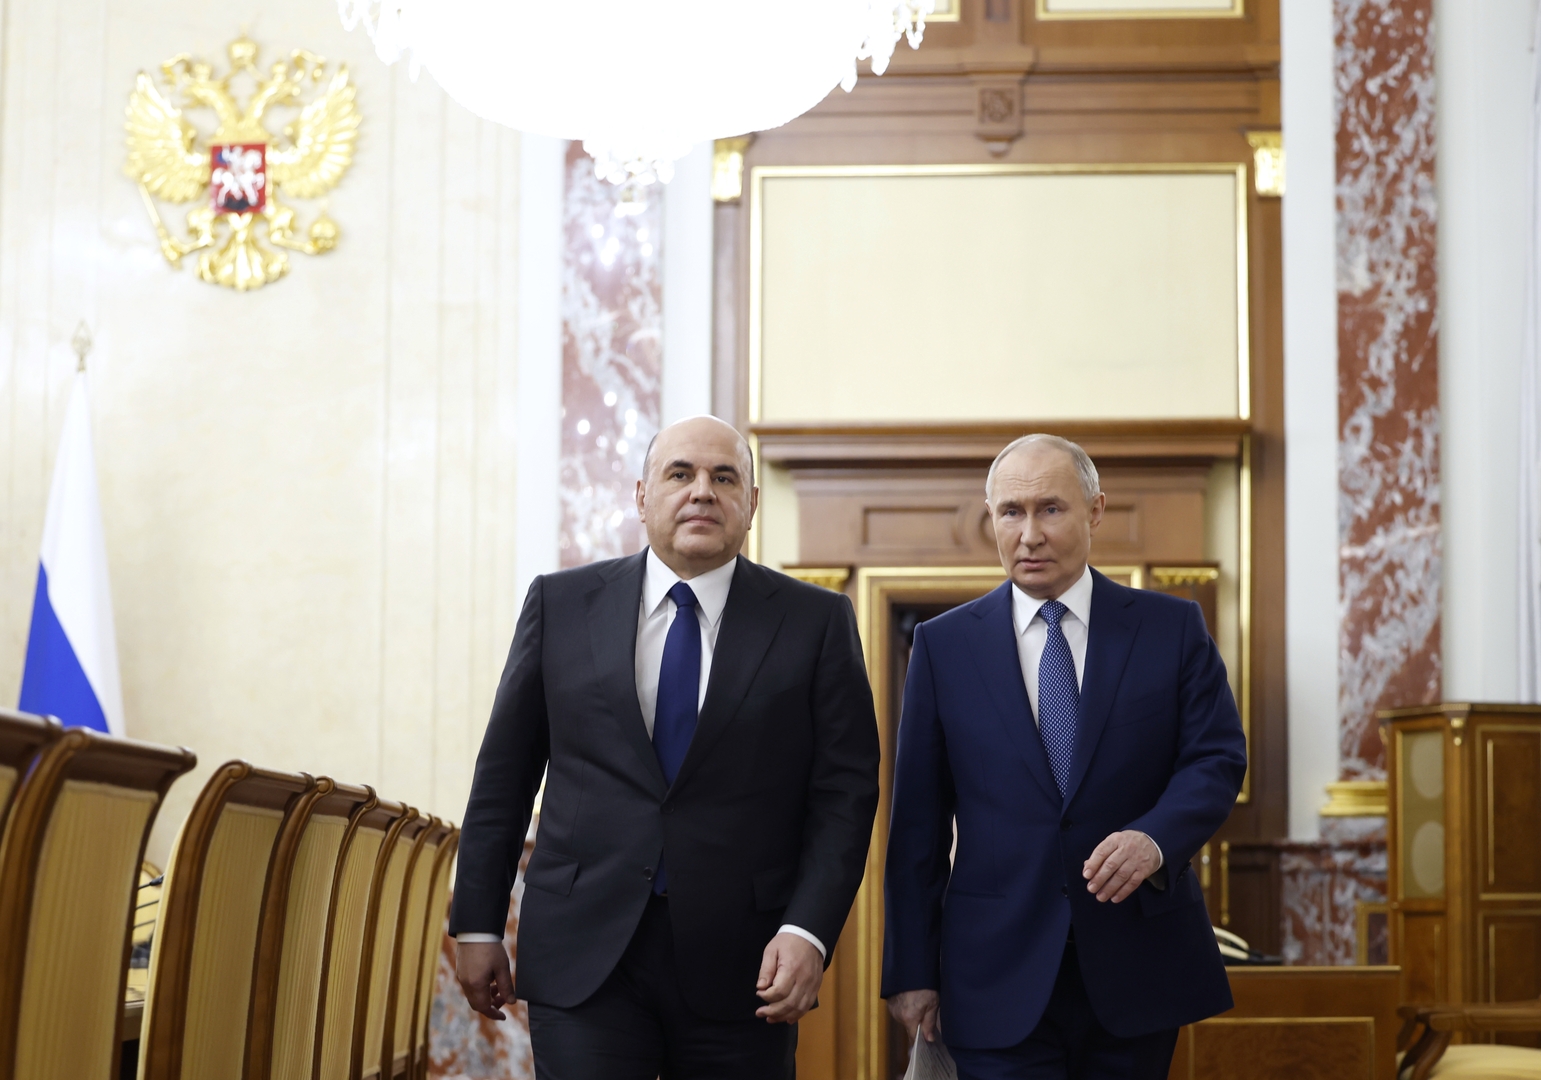 بوتين يوقع مرسوما بتعيين ميخائيل ميشوستين رئيسا للحكومة الروسية